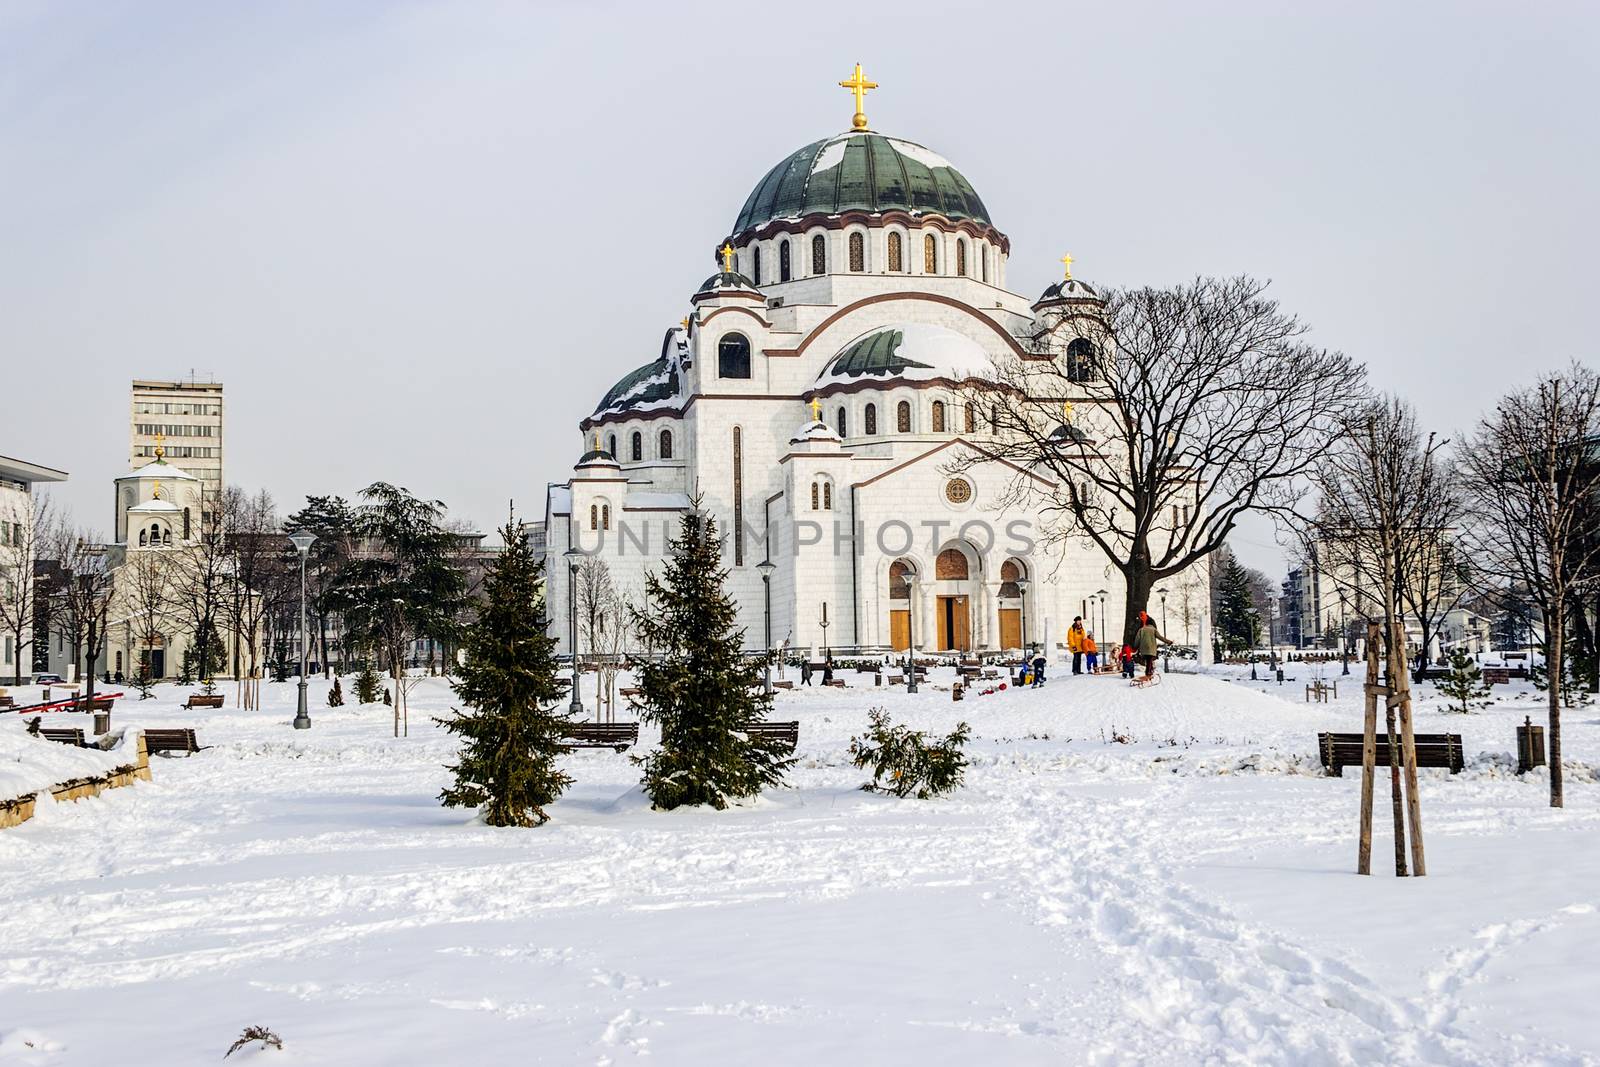 Cathedral of Saint Sava at winter, Belgrade Serbia